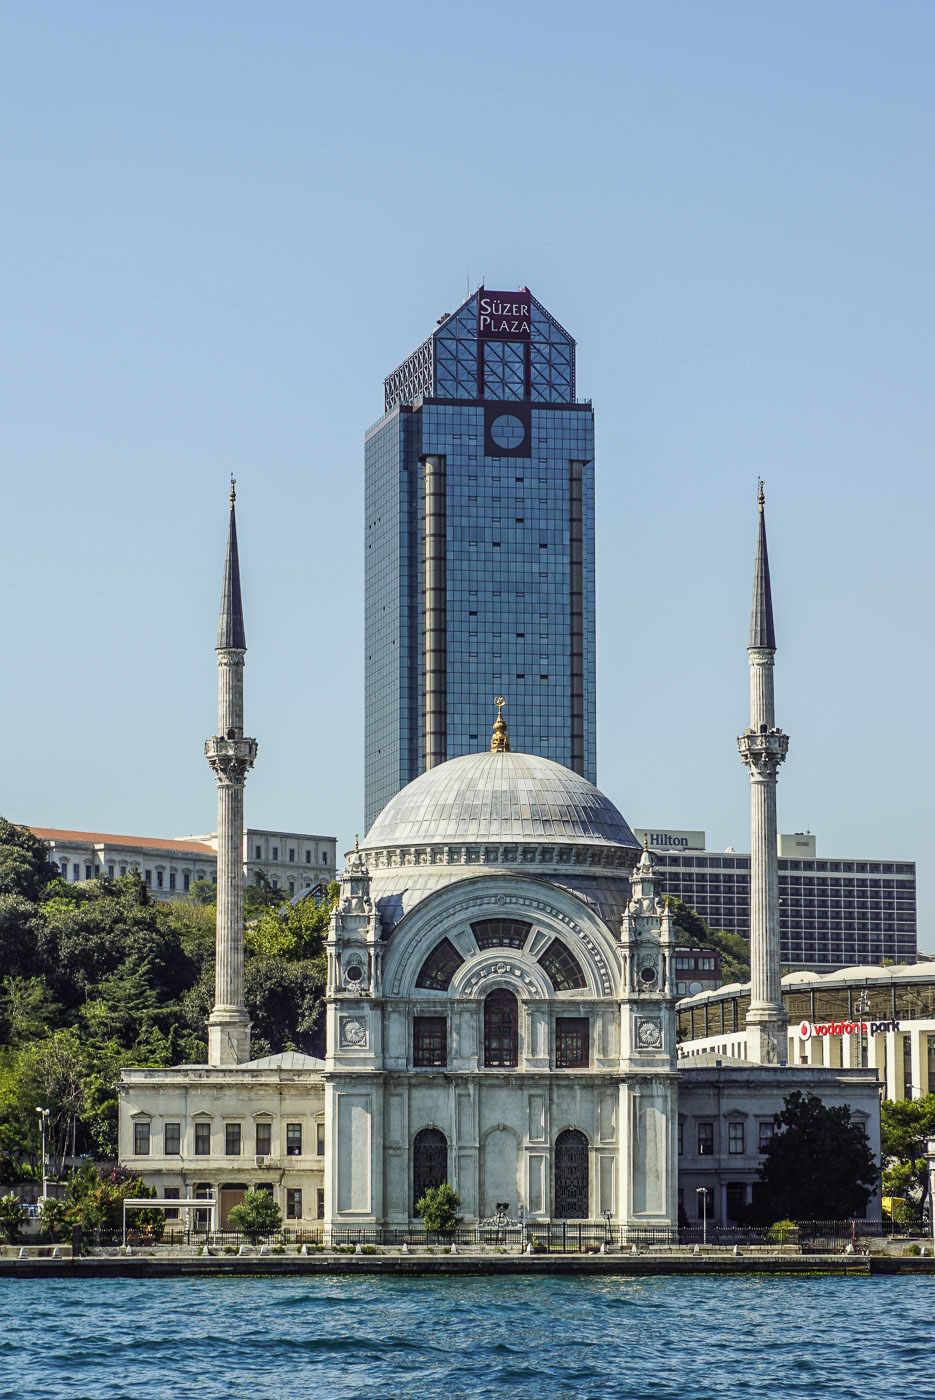 Blick auf eine Moschee vom Bosporus aus sie hat zwei Minarette und sieht relativ alt aus im Hintergrund erhebt sich ein Glas Hochhaus der Süzer Plaza.